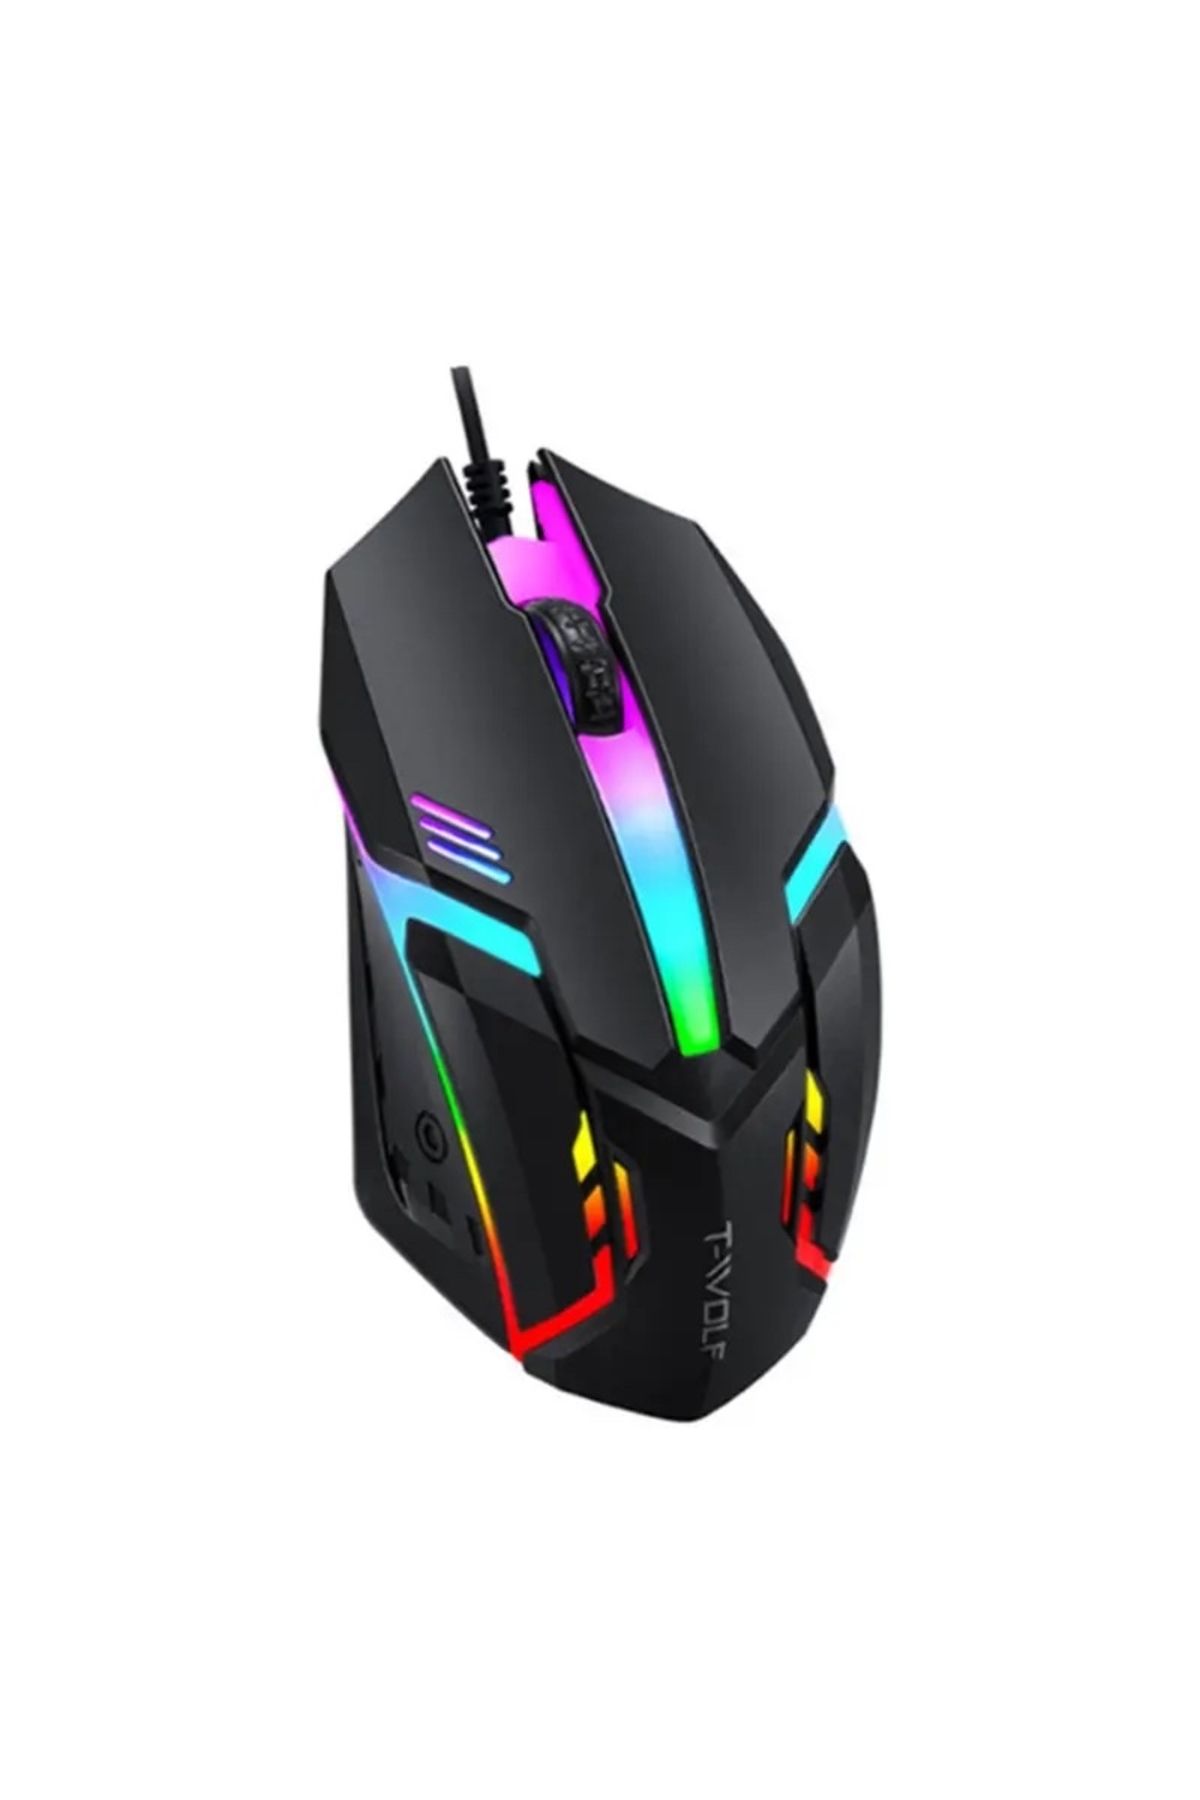 piblue X1 RGB Işıklı Oyuncu Kablolu Gamer Oyuncu Mouse Siyah